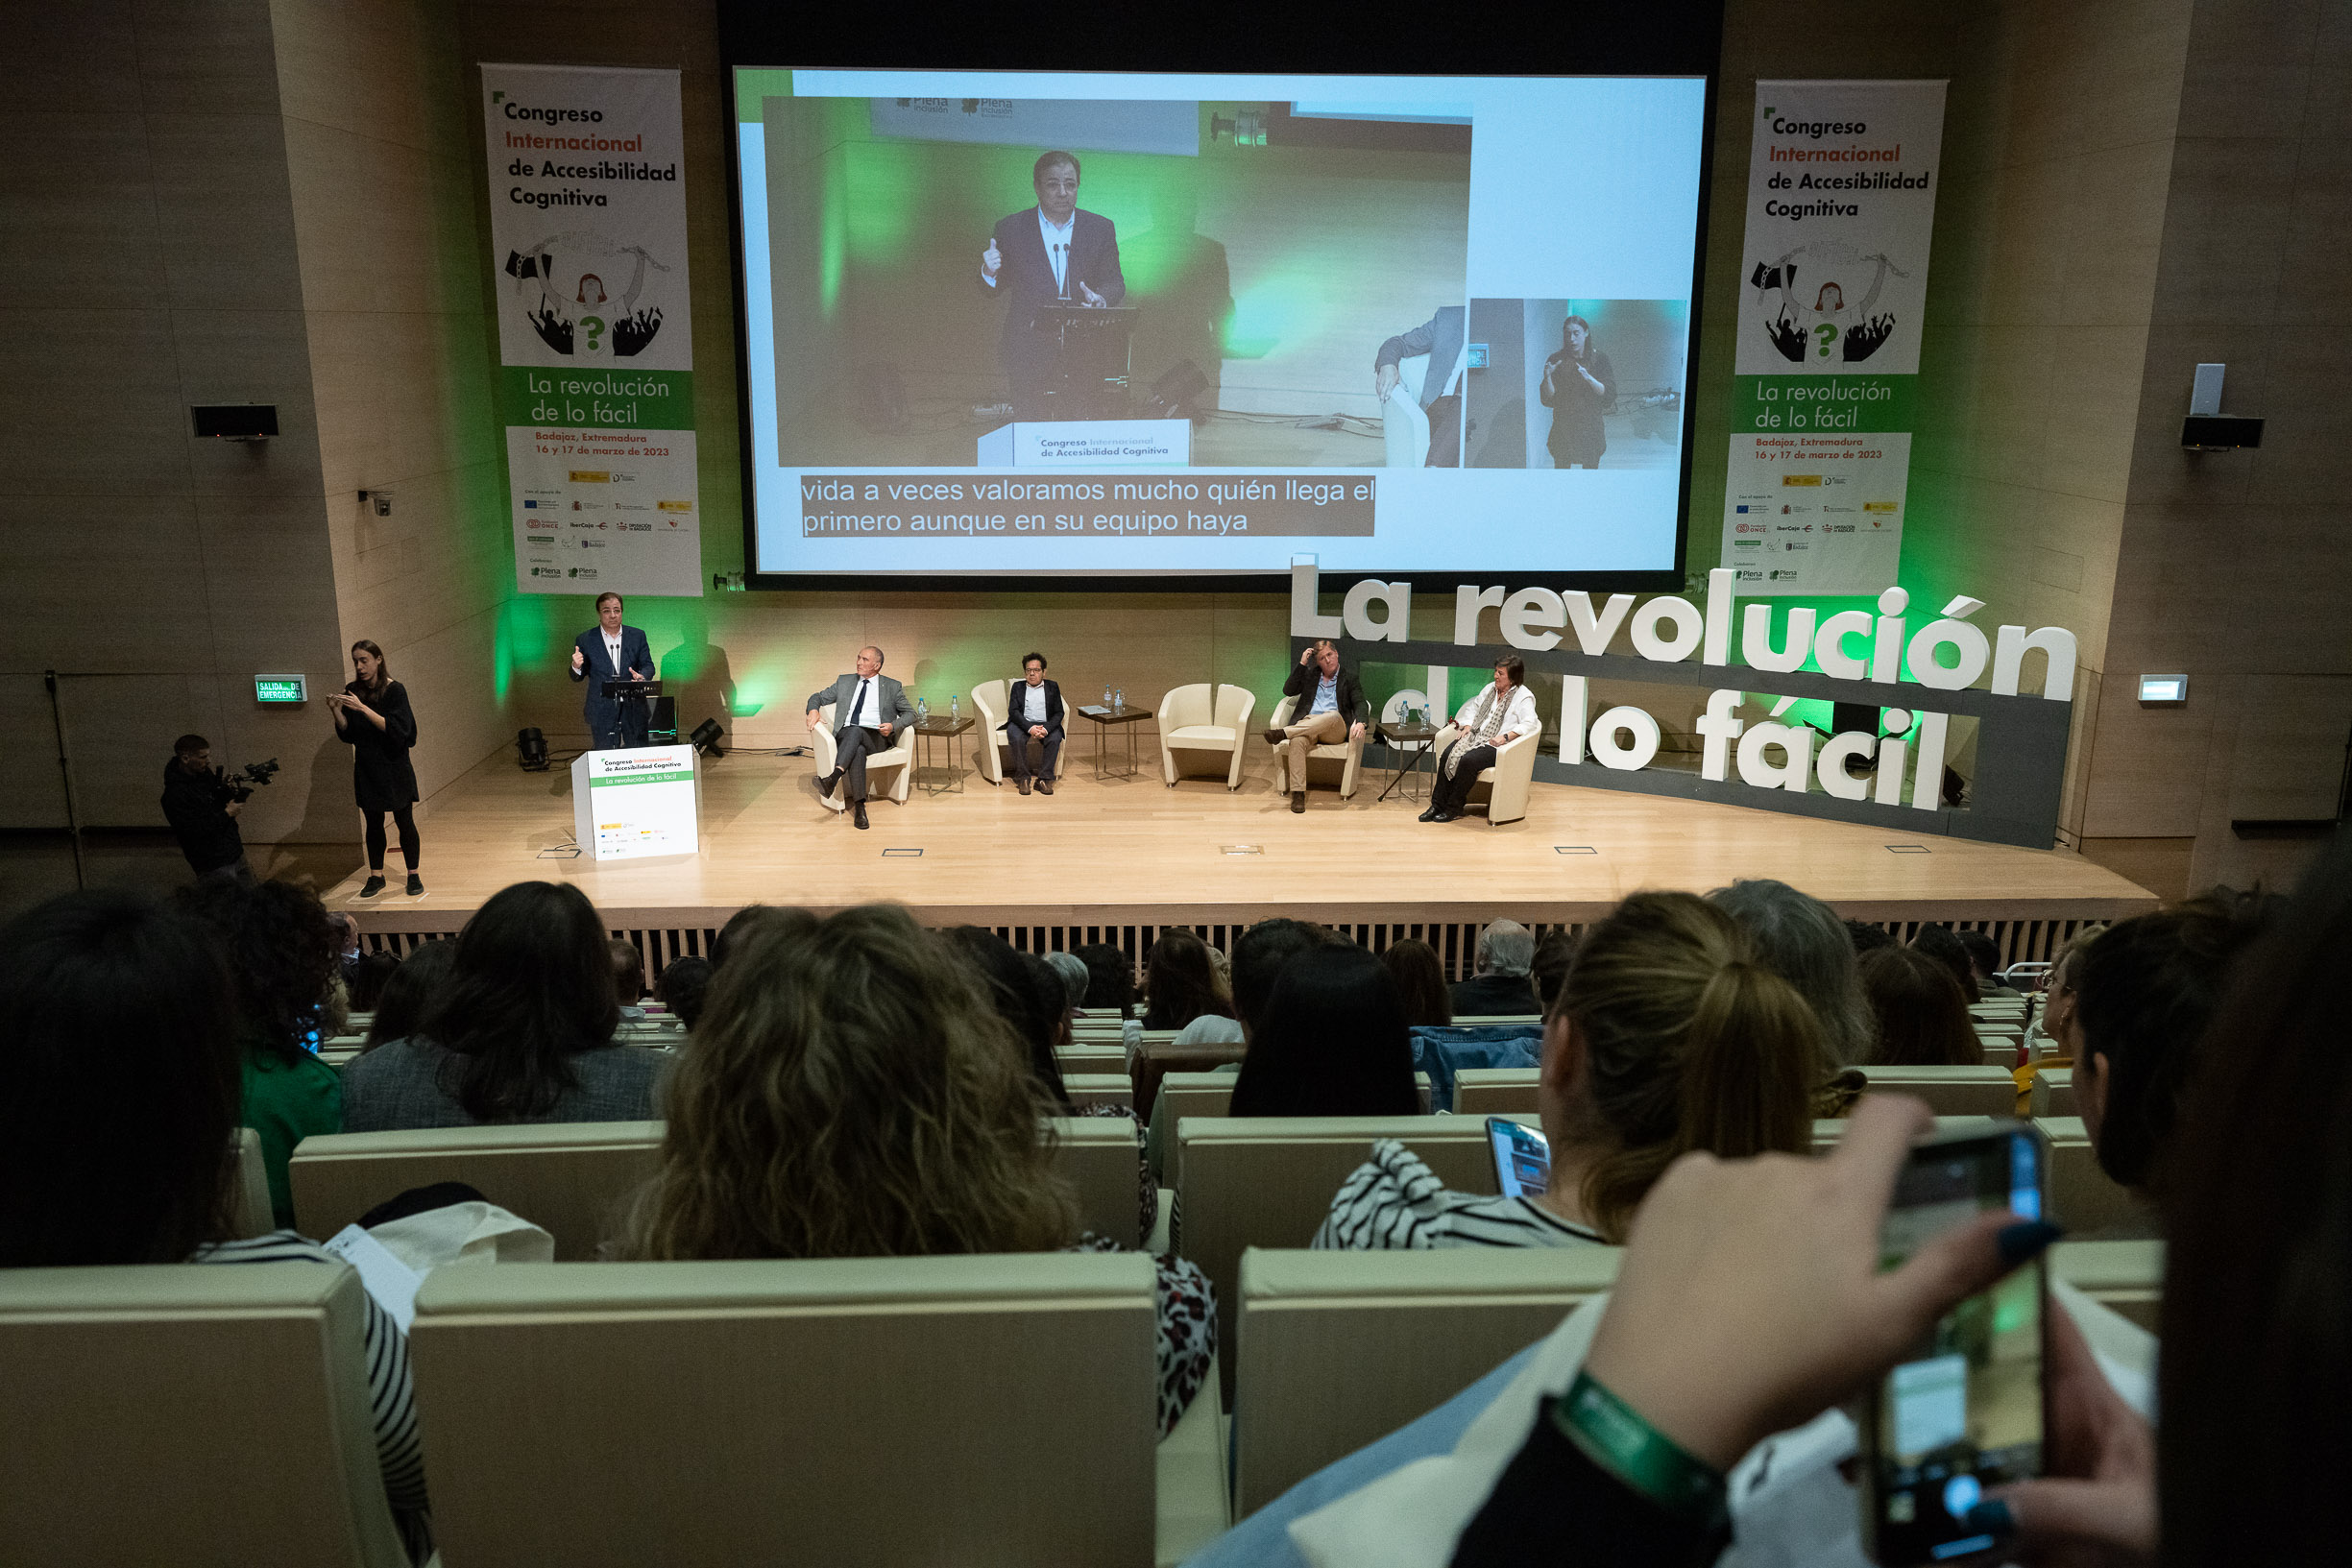 Fernández Vara interviene en el congreso de Plena inclusión